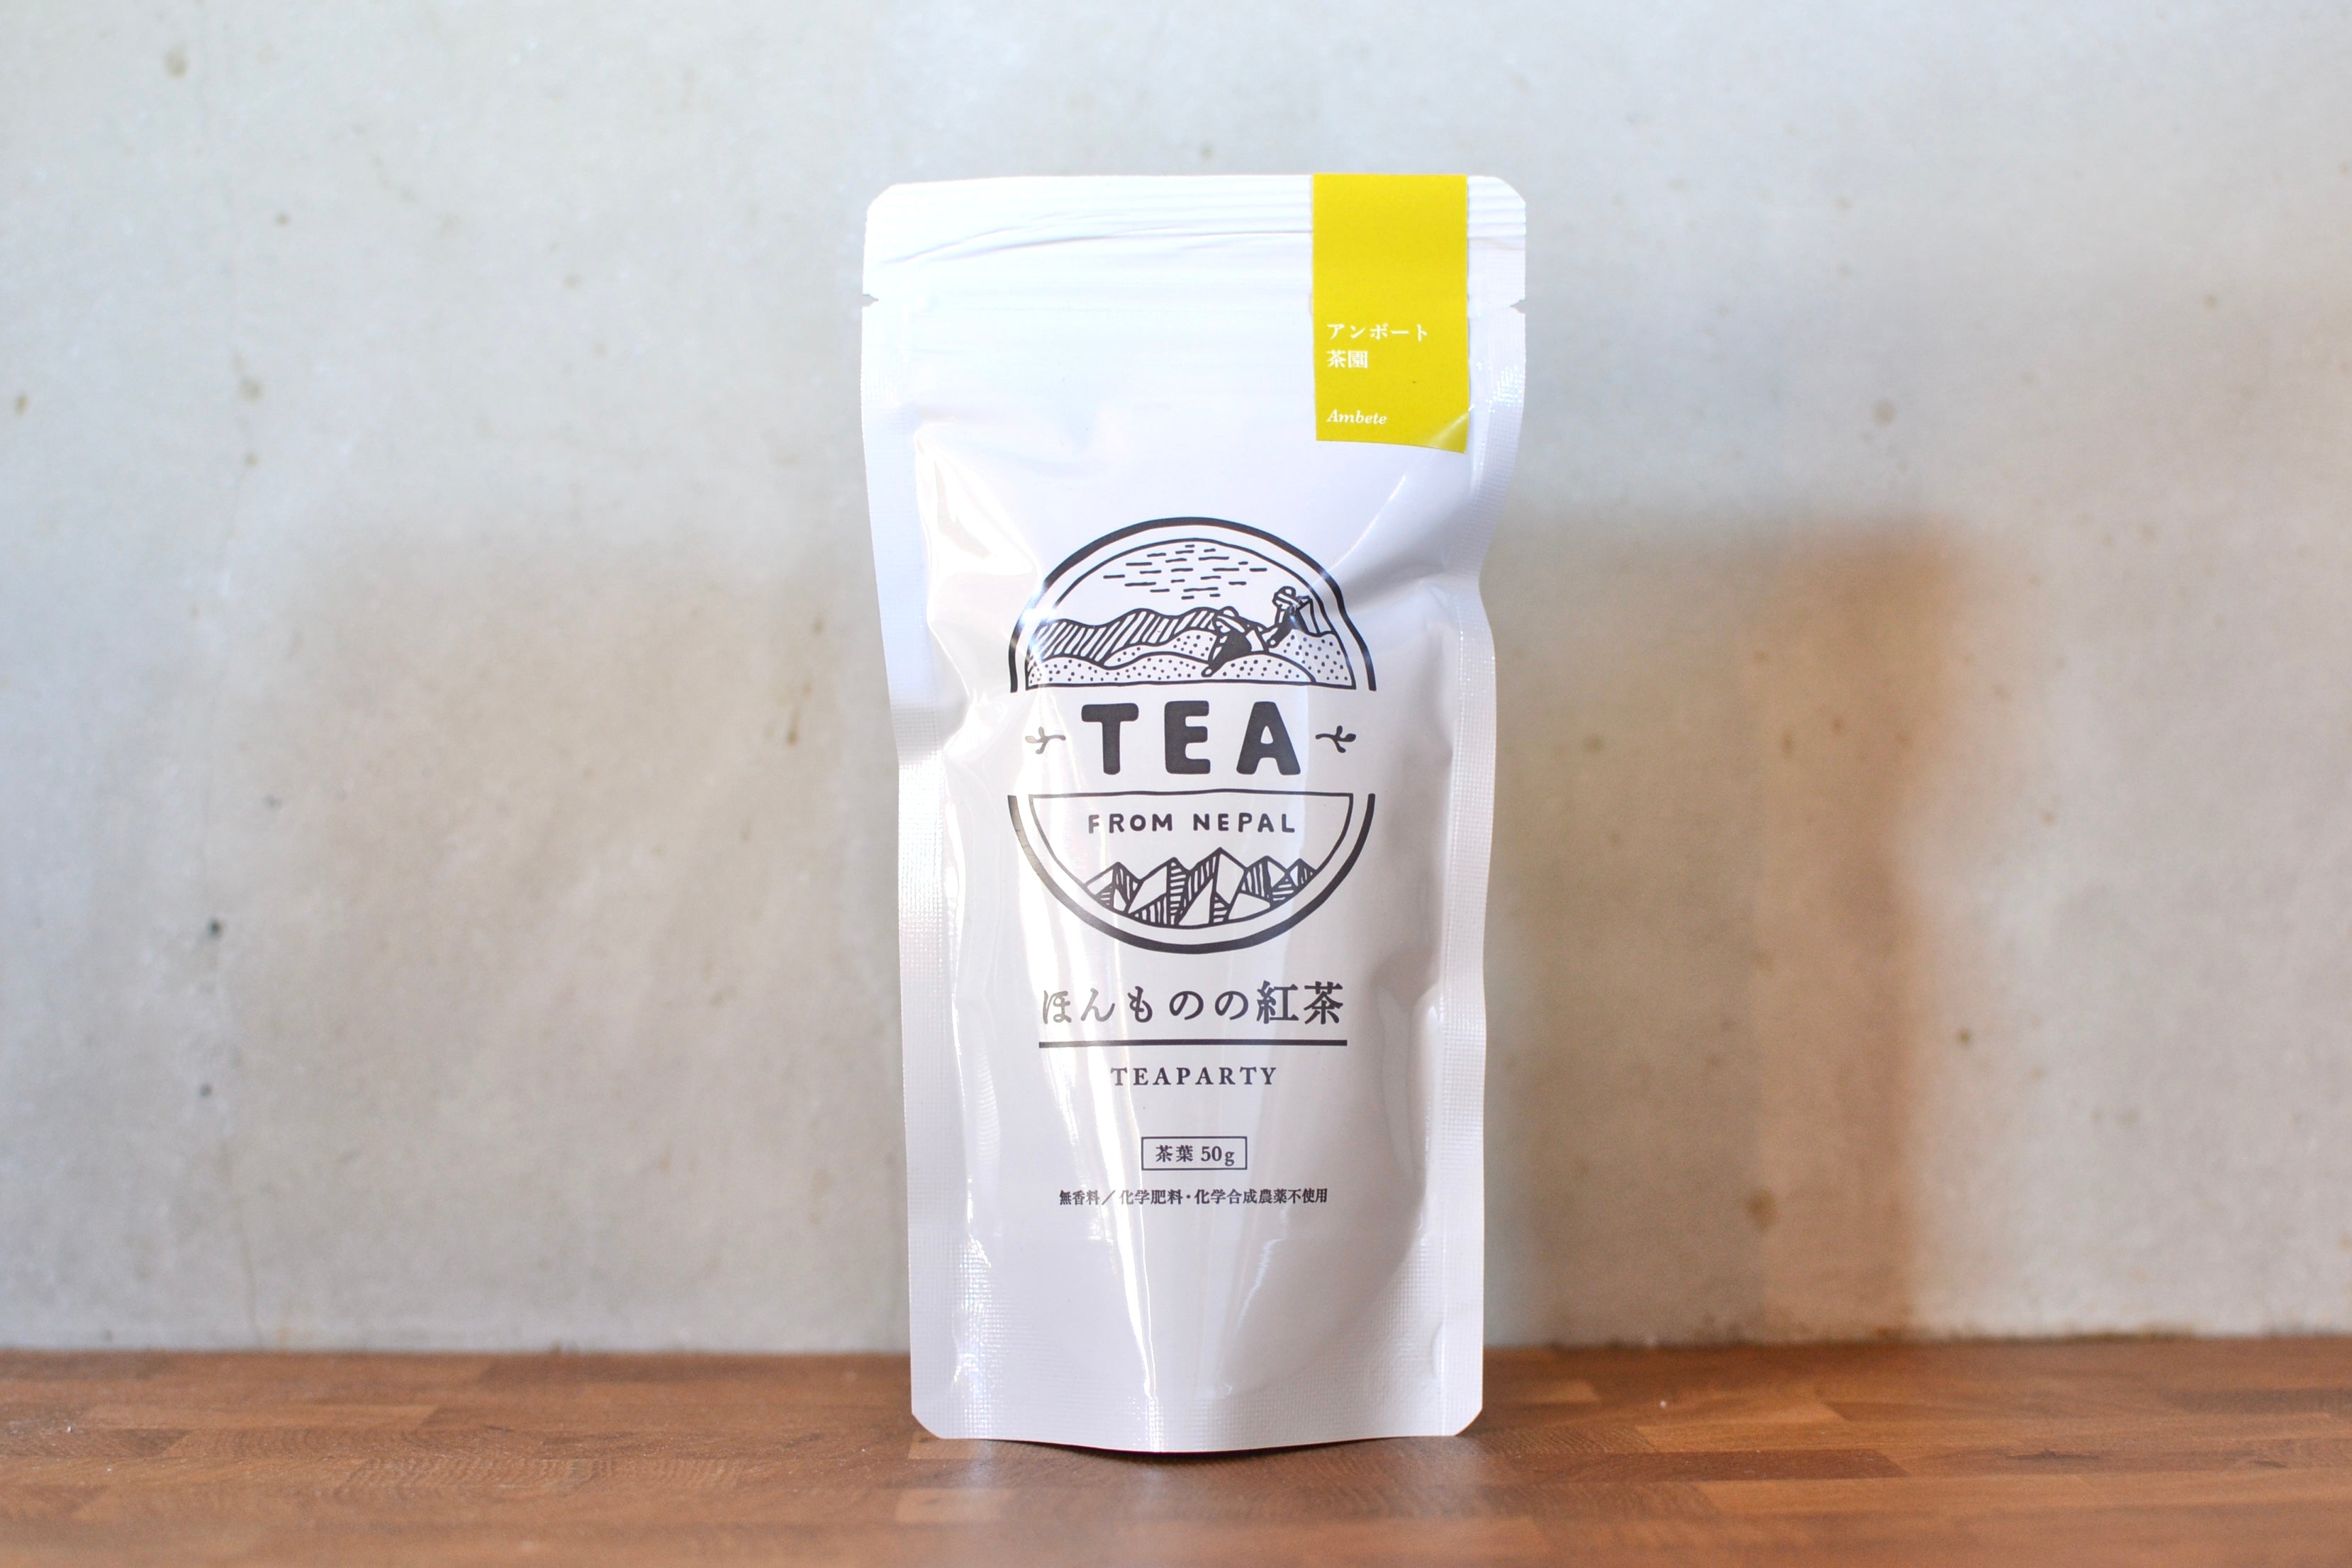 【イラム紅茶アンボート茶園 新茶】ダージリン隣接地産 稀少ネパール紅茶 甘く奥深い味わい